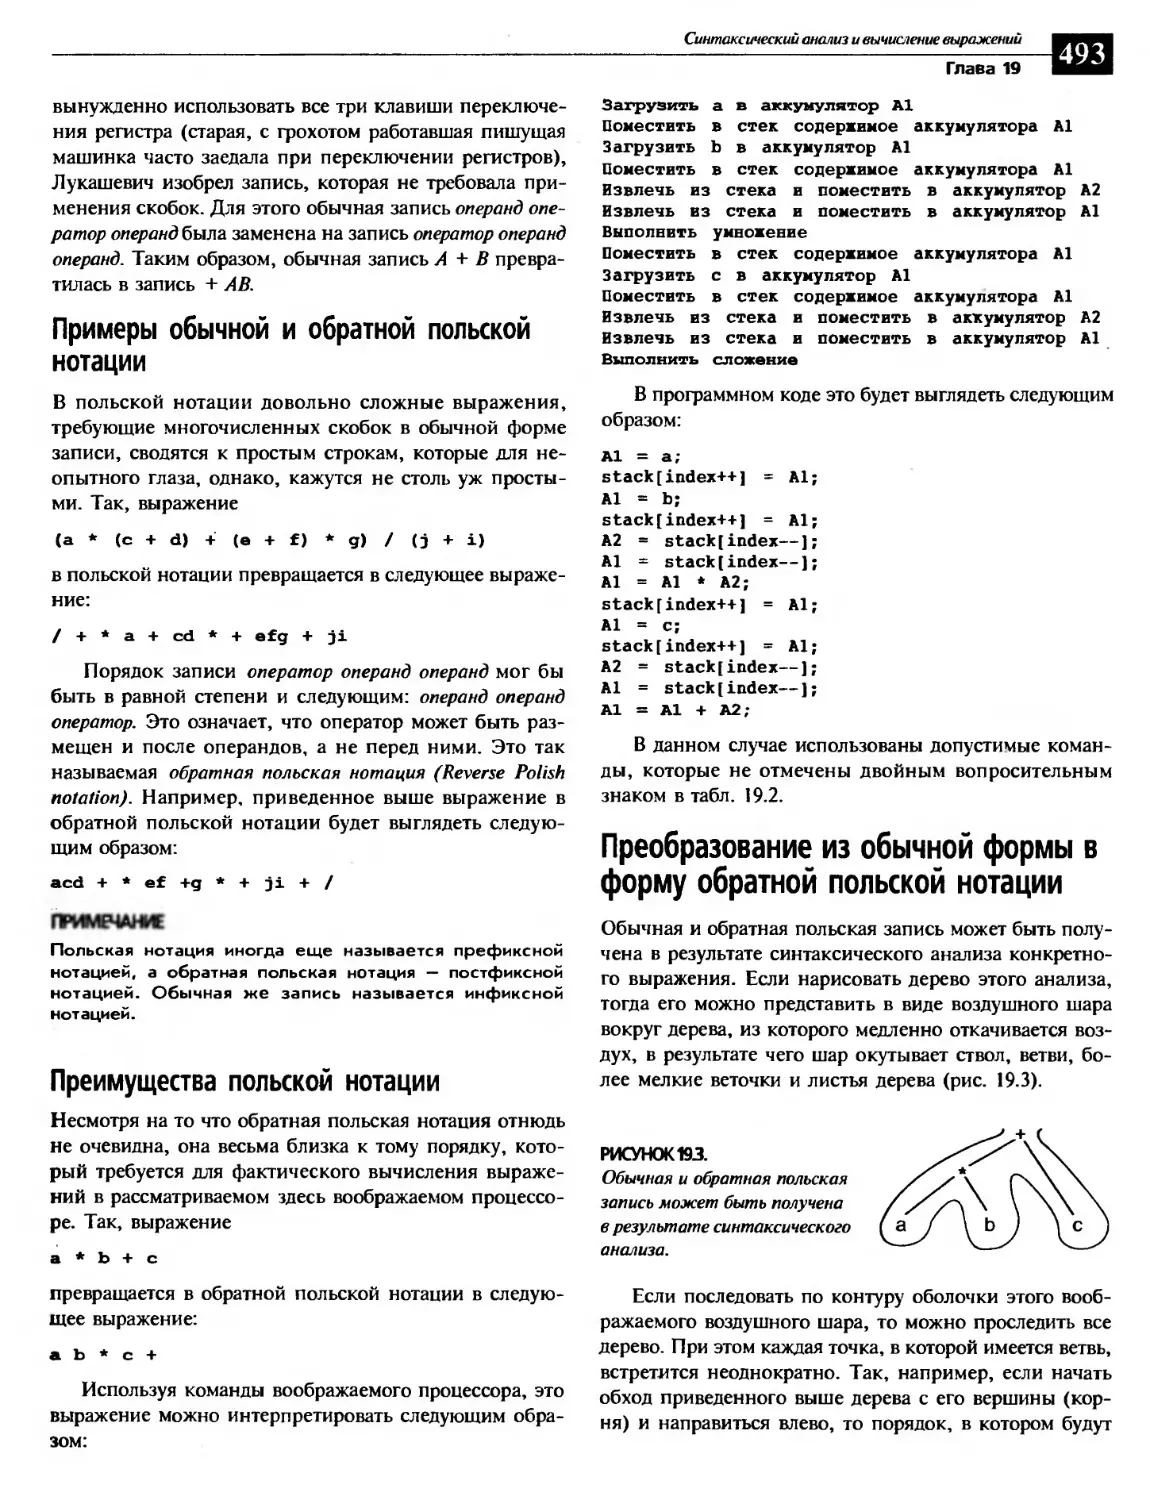 Примеры обычной и обратной польской нотации
Преимущества польской нотации
Преобразование из обычной формы в форму обратной польской нотации